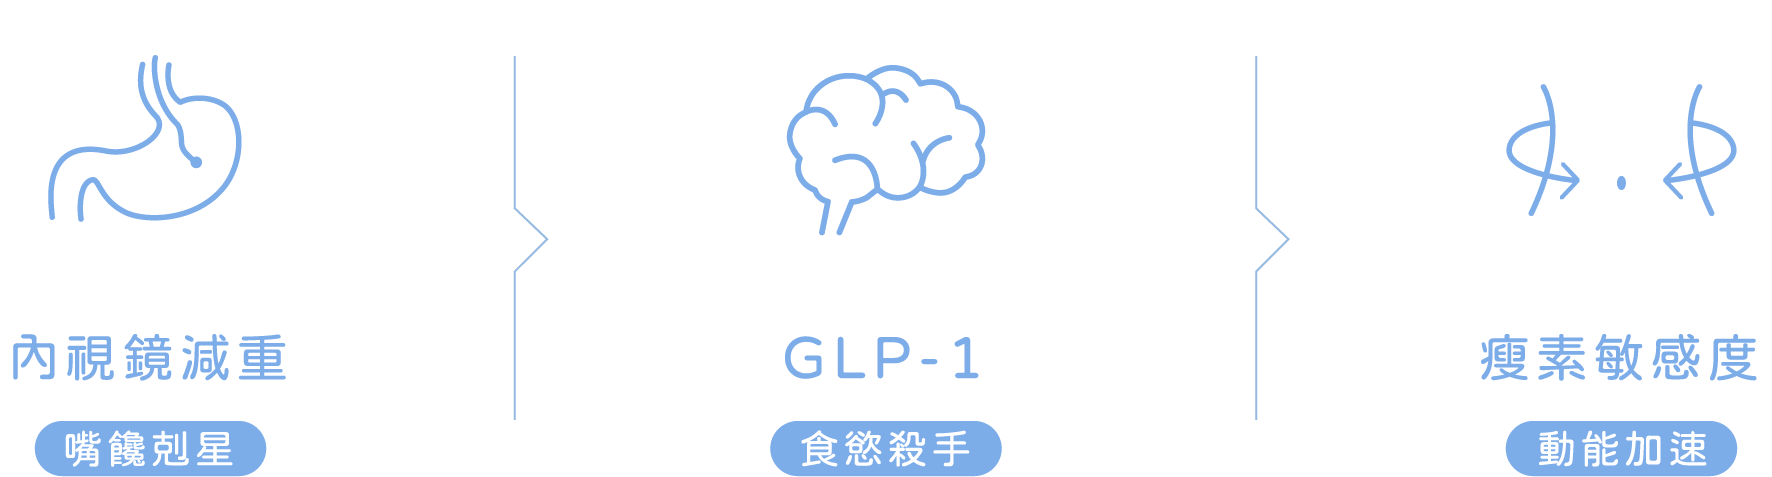 內視鏡減重-嘴饞剋星 GLP-1-食慾殺手 瘦素敏感度-動能加速